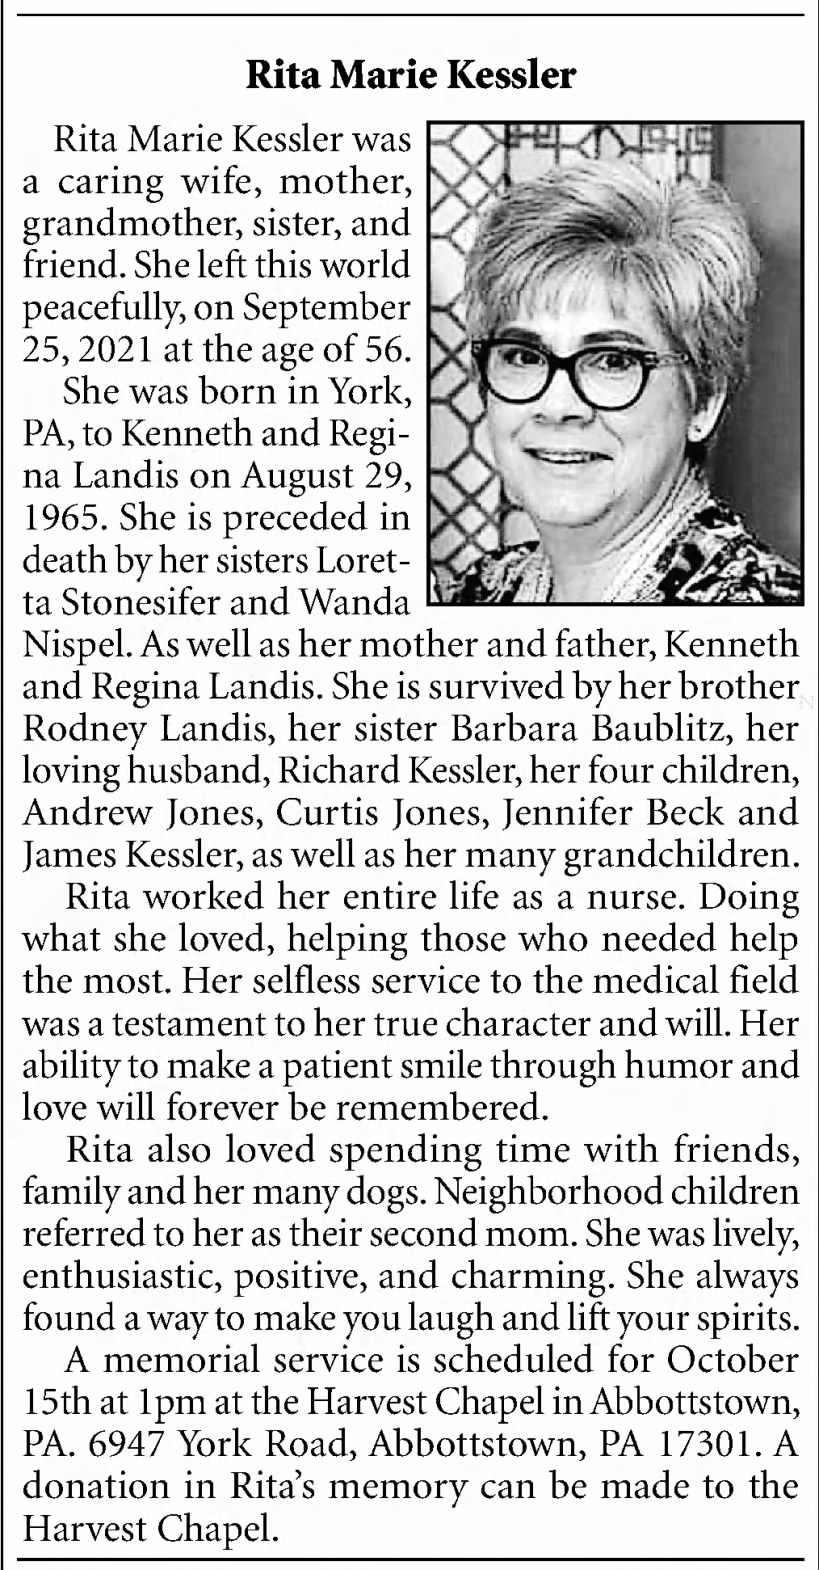 Obituary for Rita Marie Kessler